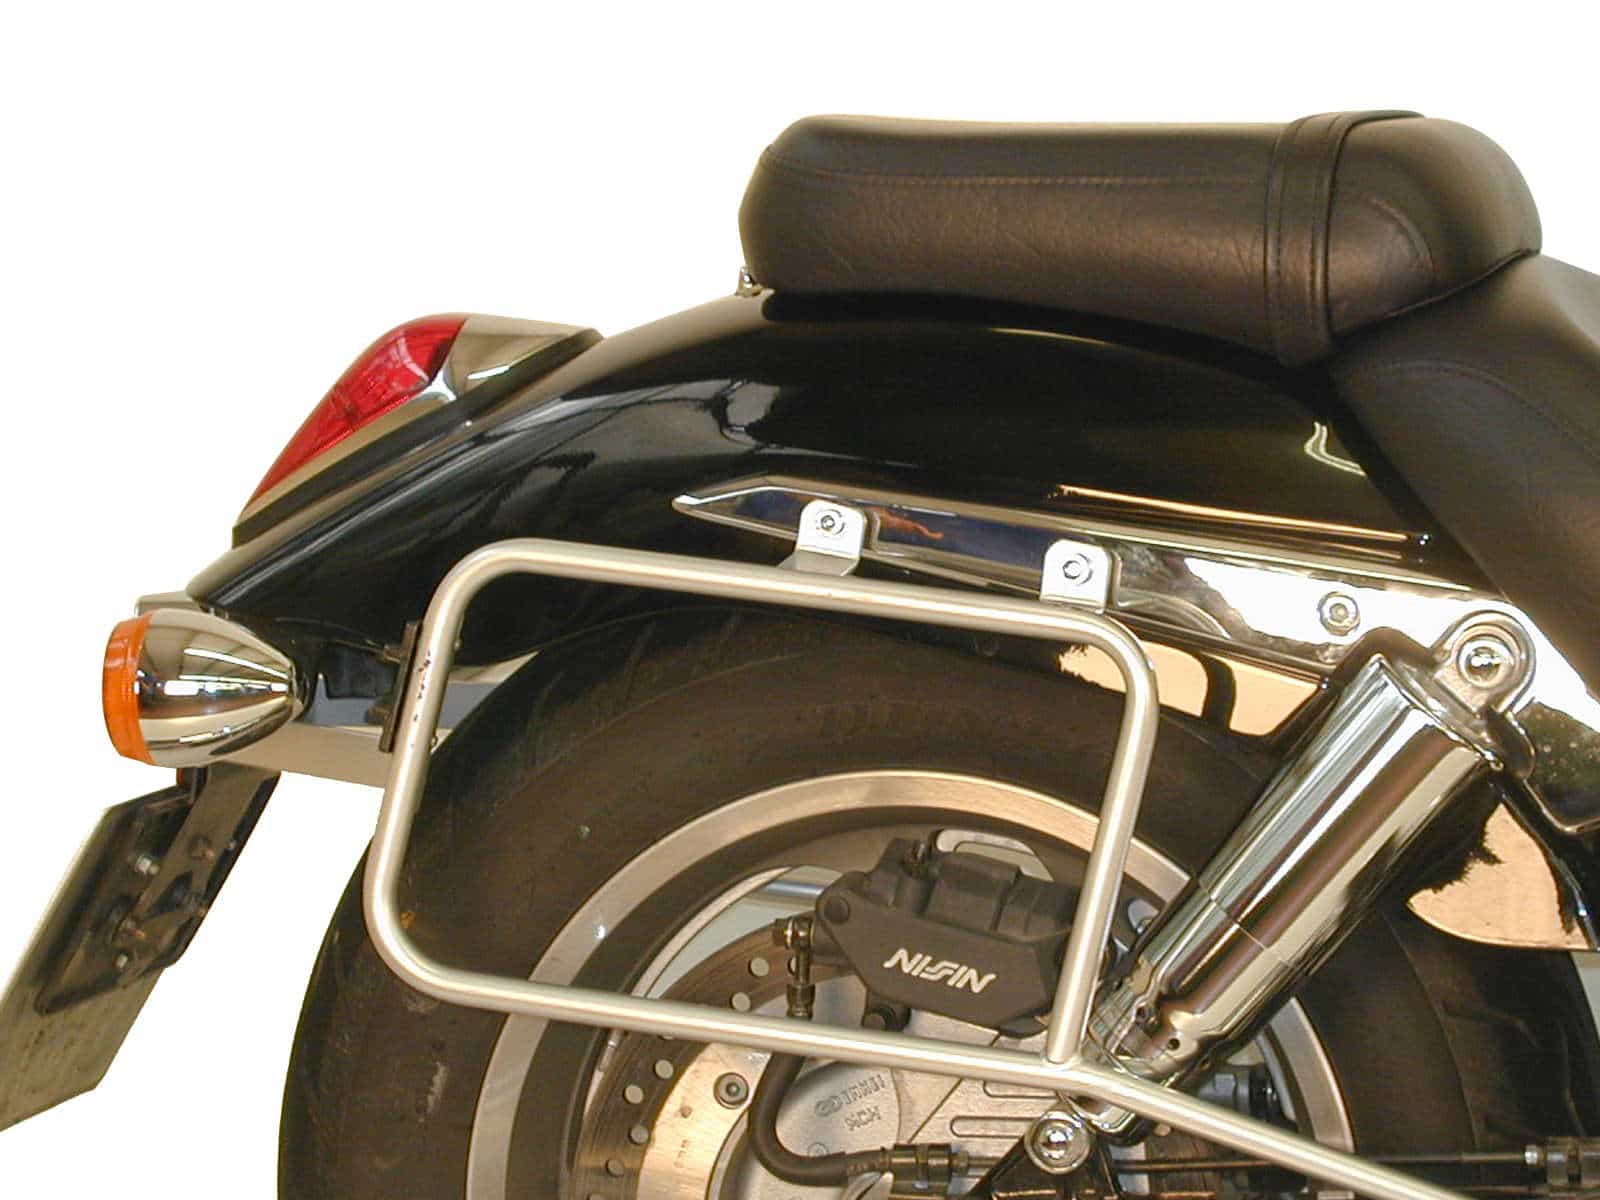 Sidecarrier permanent mounted chrome for Honda VTX 1800 (2001-2006)